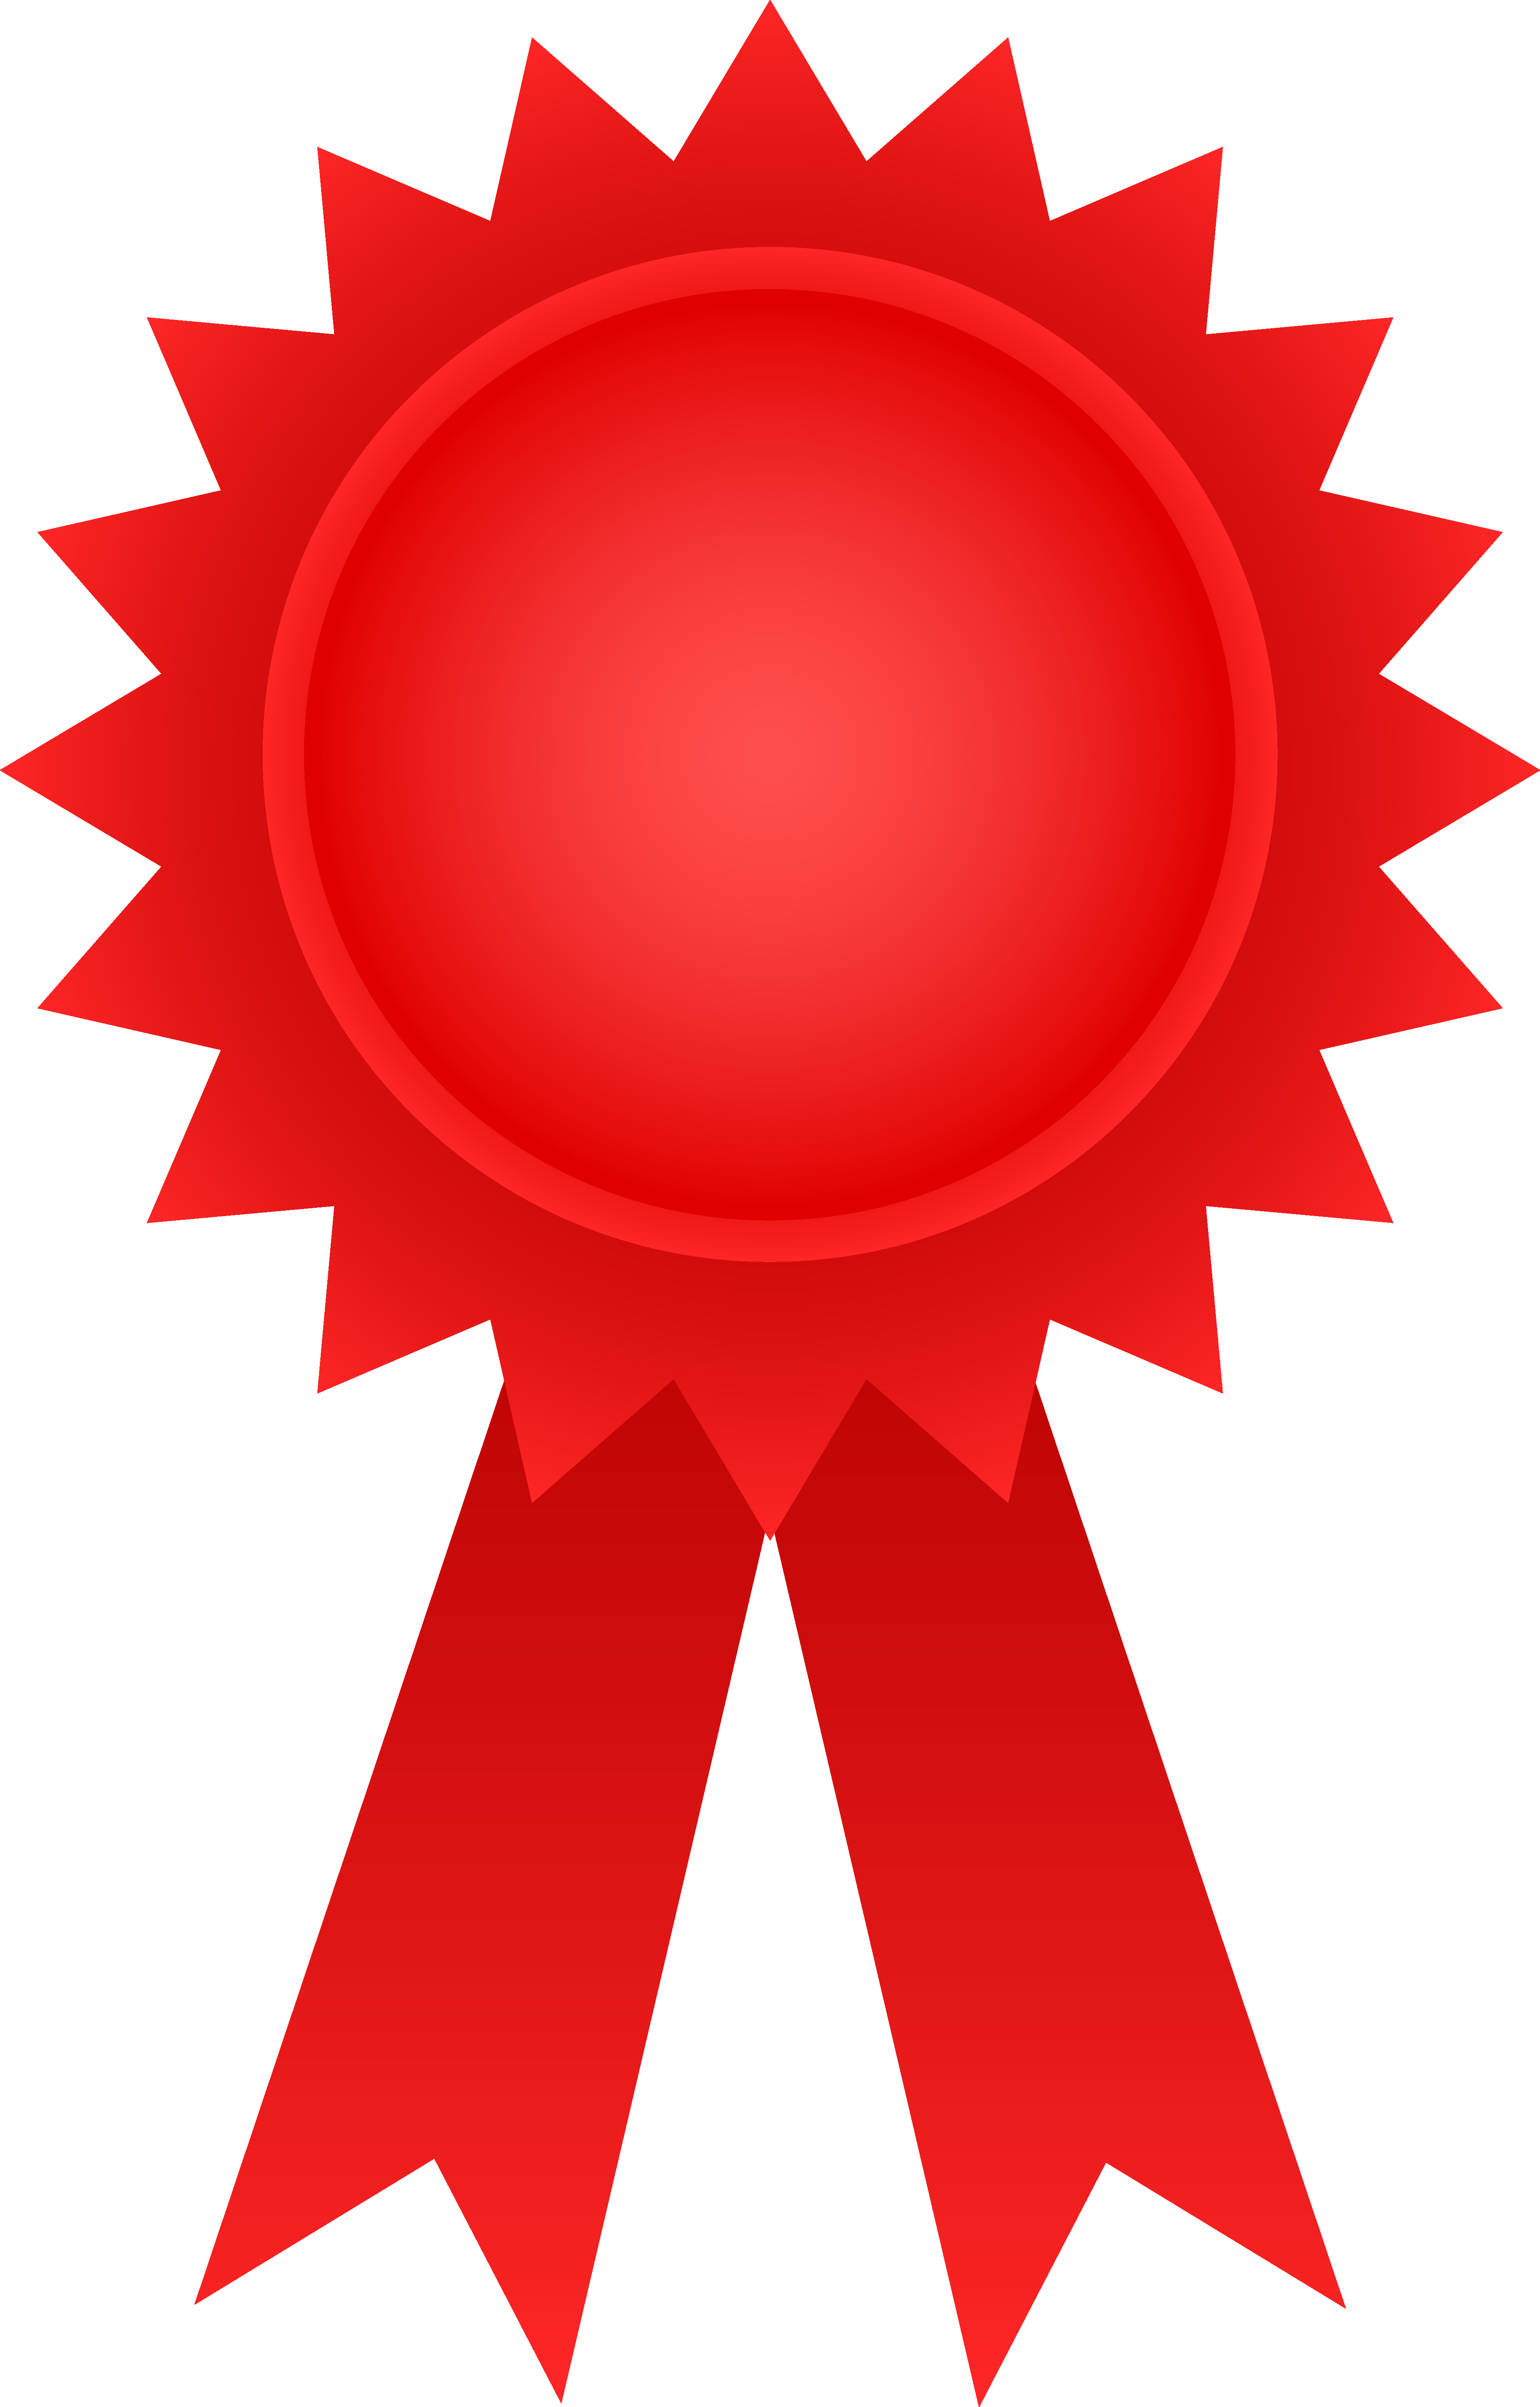 Award Ribbon Badge Free PNG Image